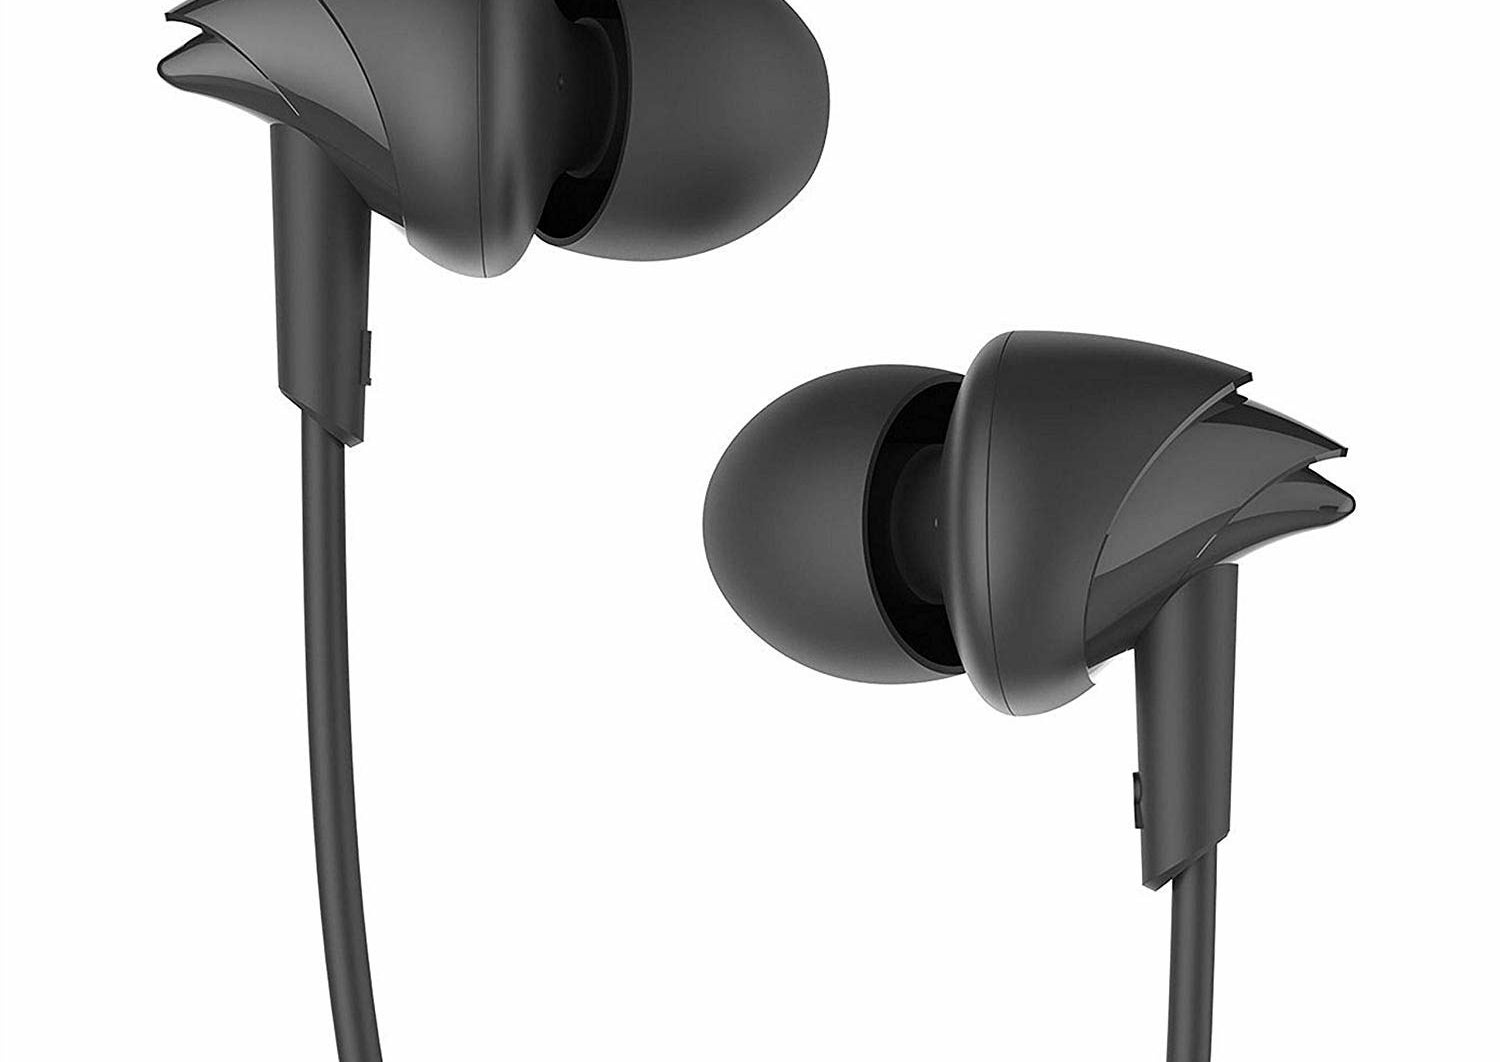 A pair of boAt earphones in black.